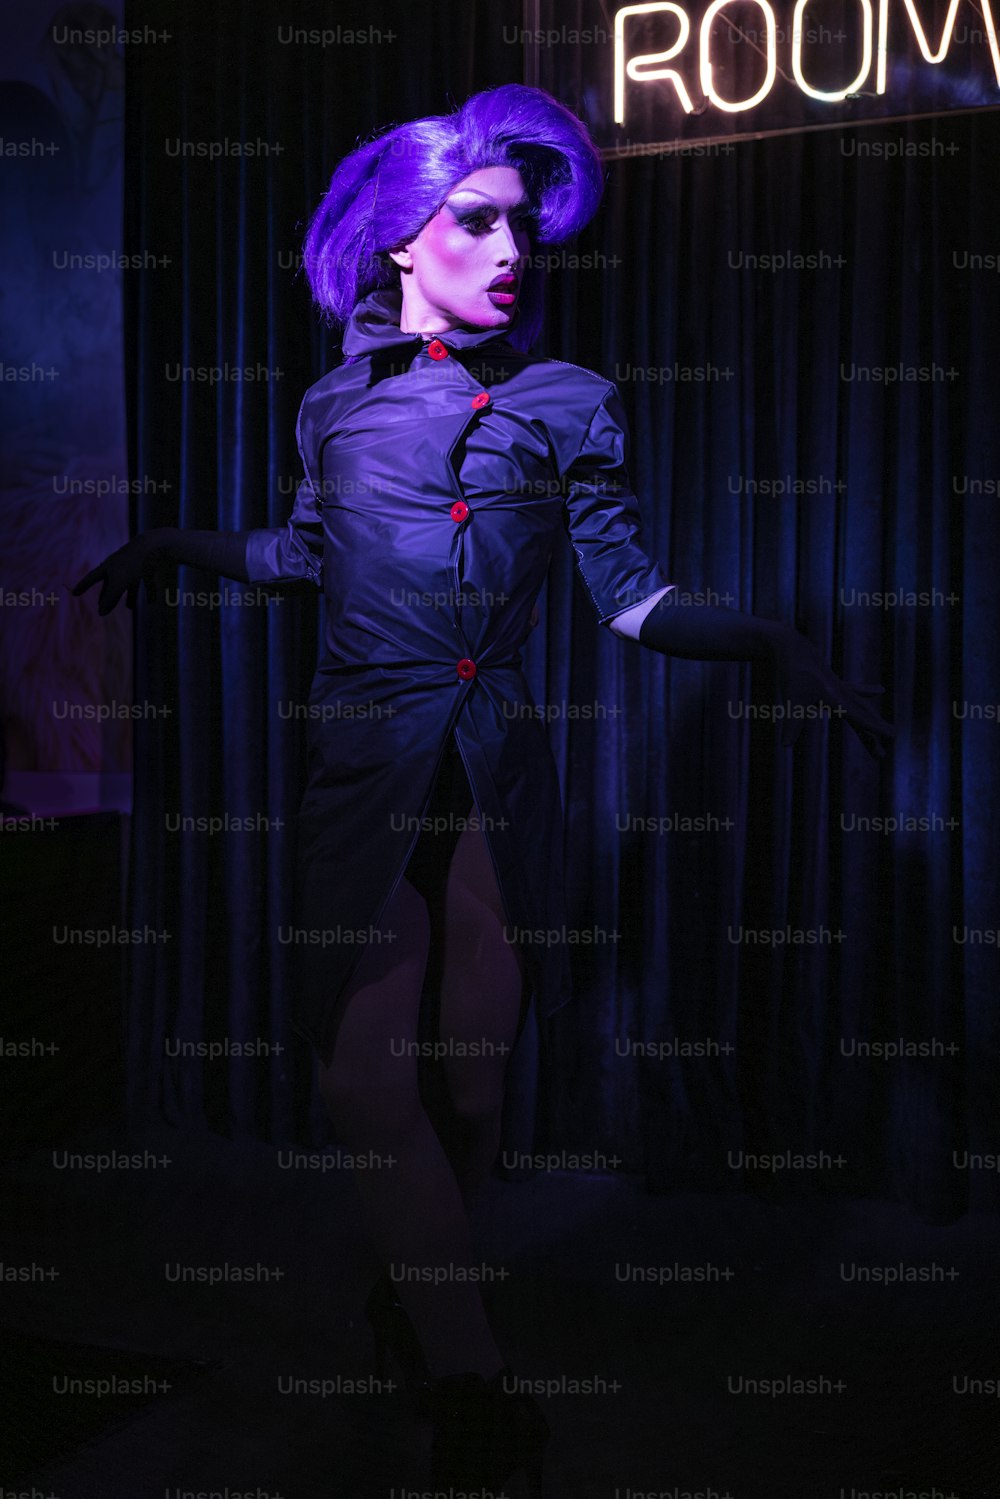 Eine Frau mit lila Haaren steht in einem dunklen Raum